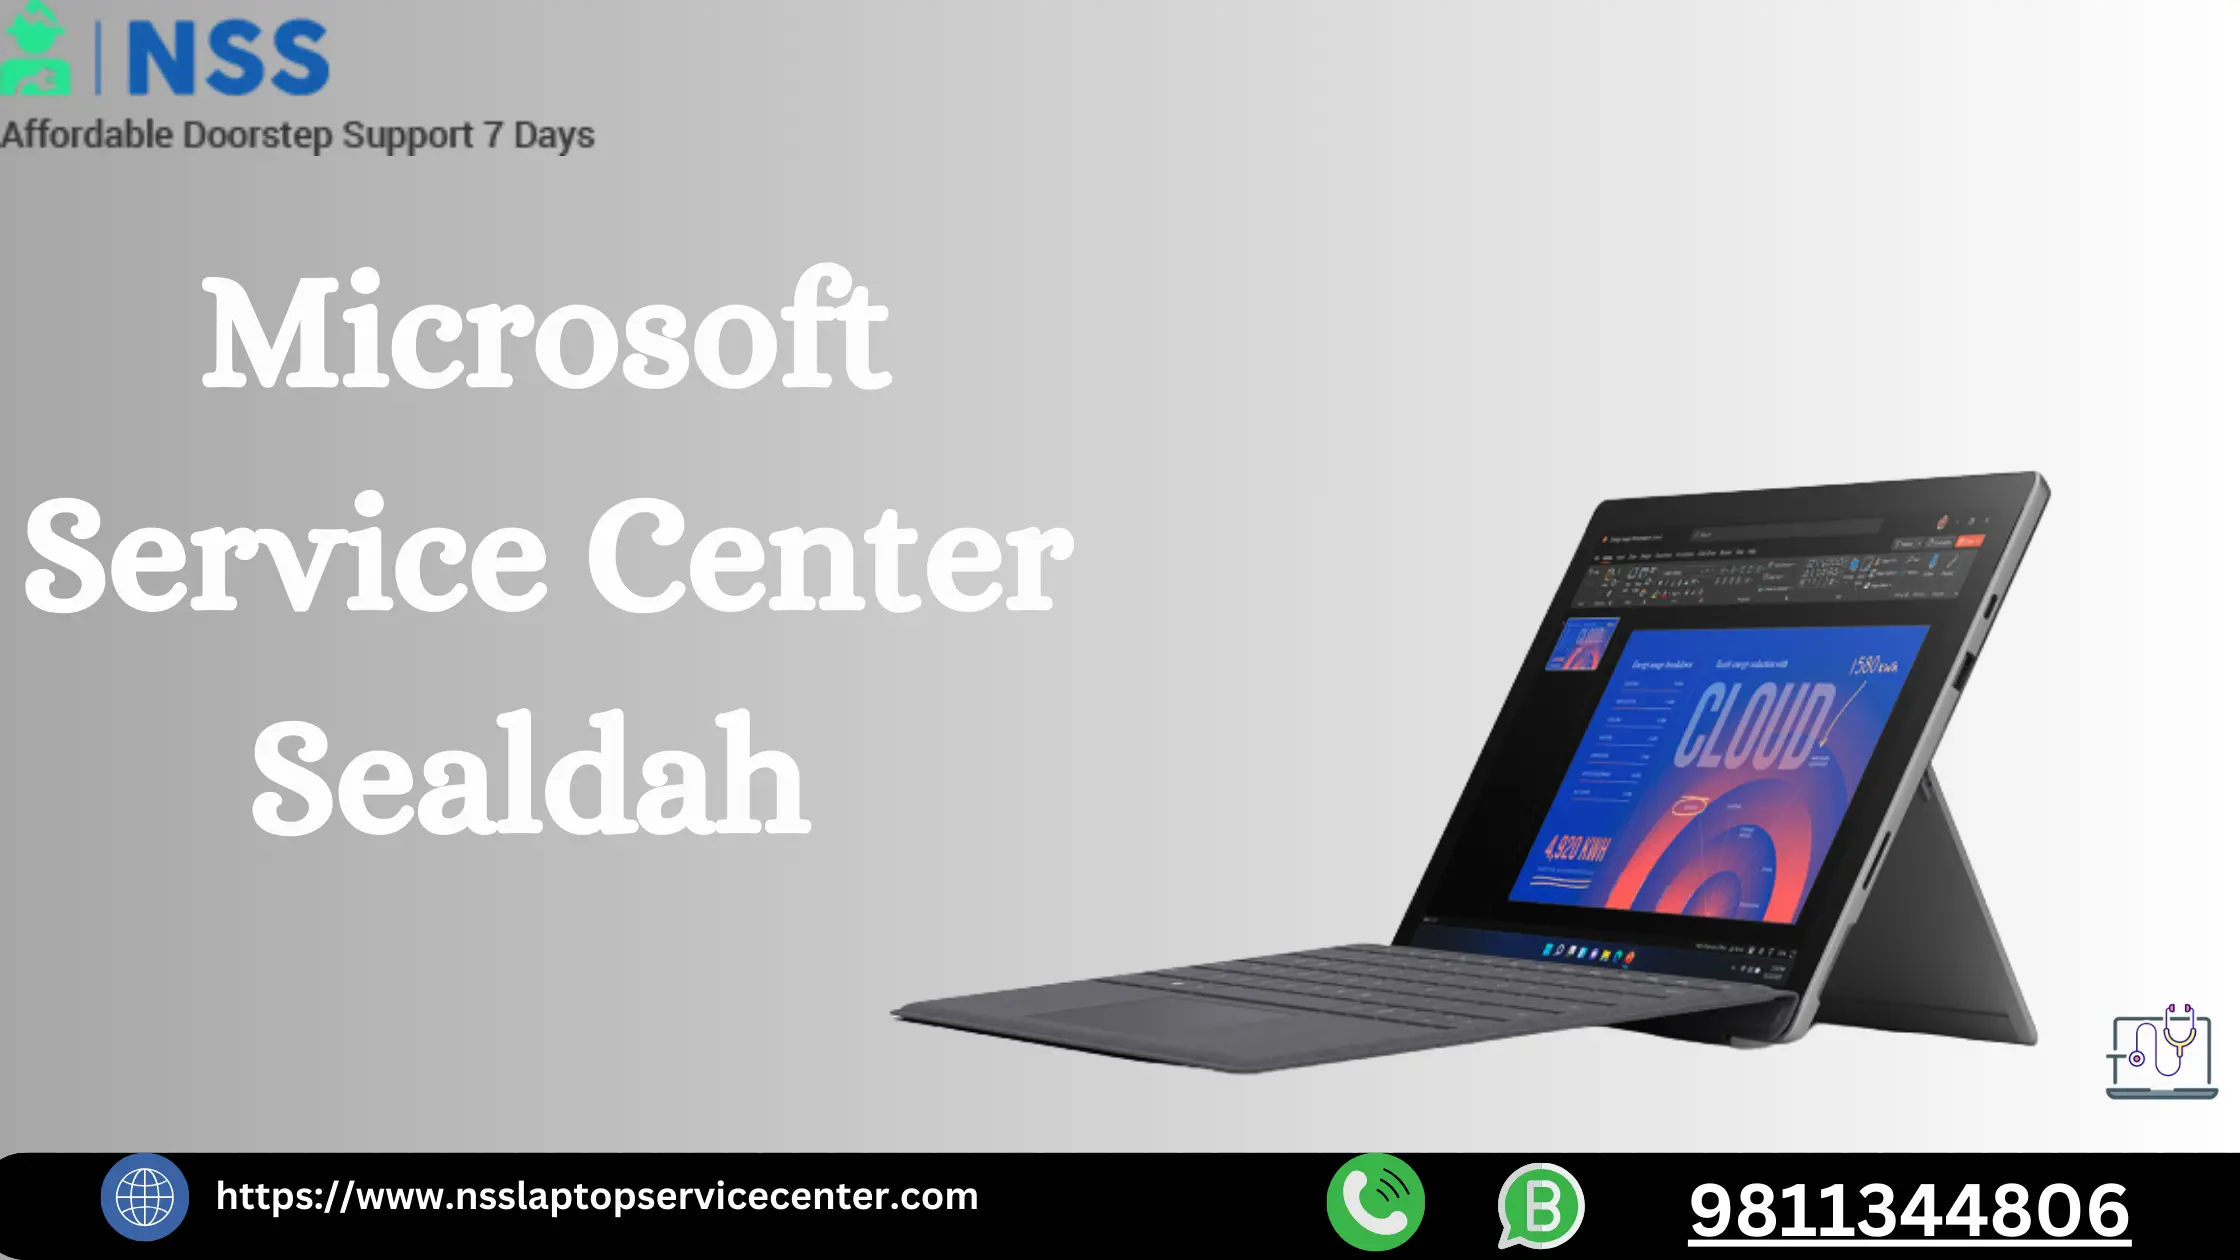 Microsoft Service Center Sealdah Near Kolkata